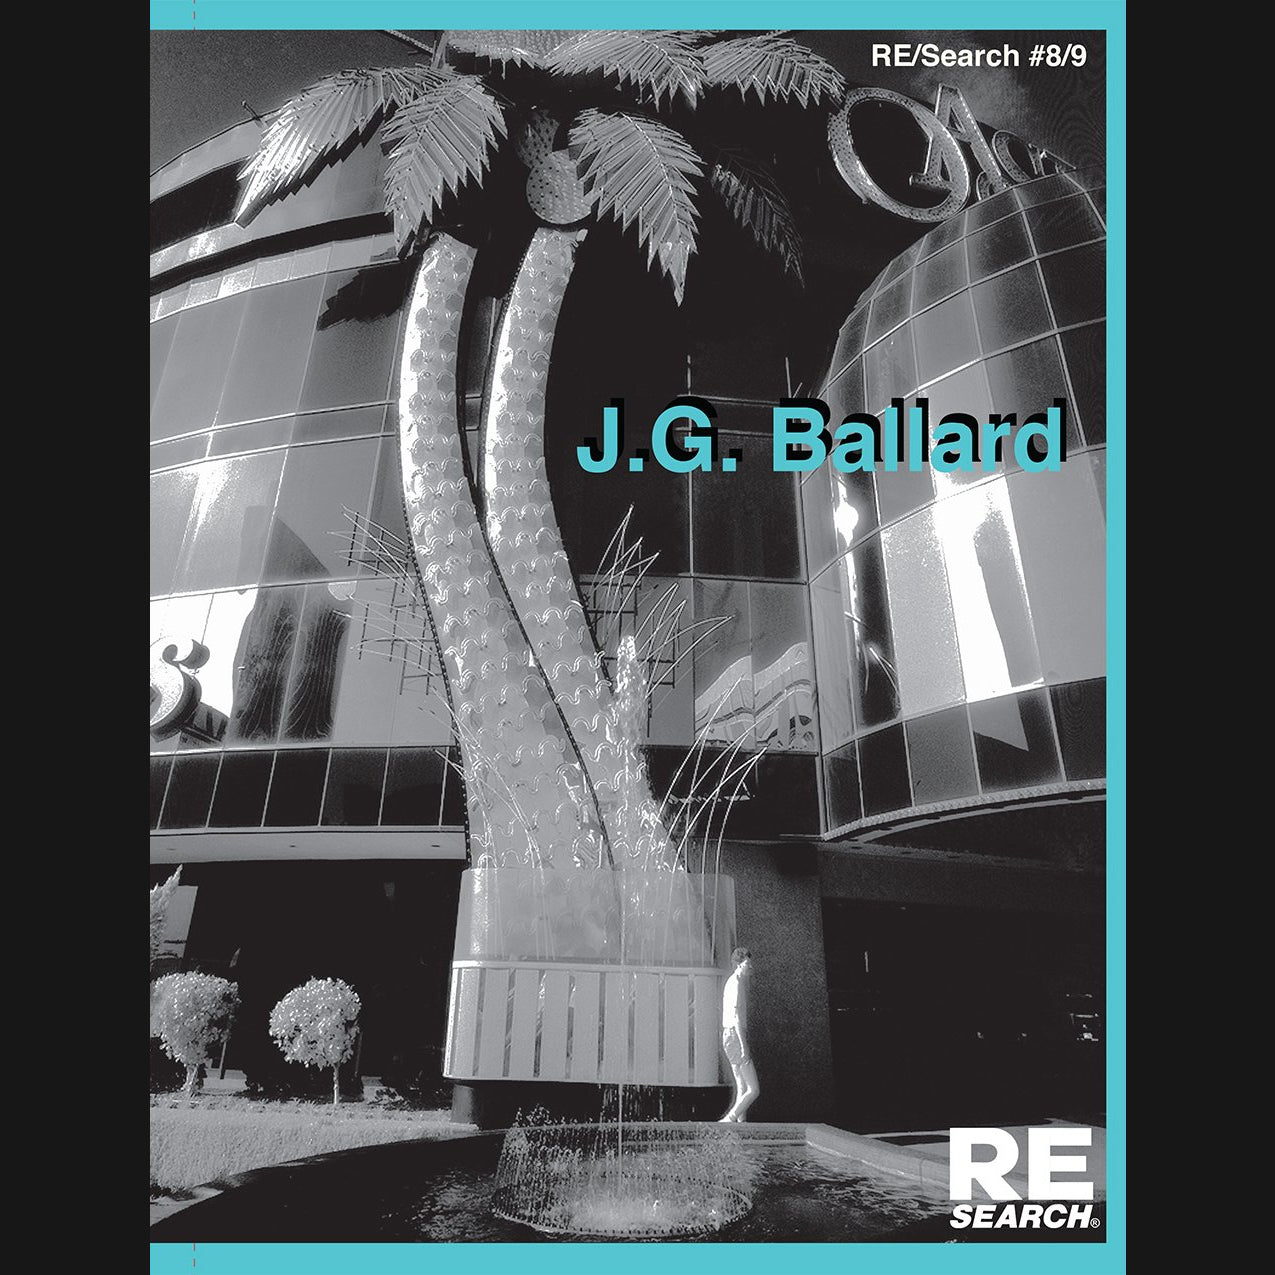 RE/SEARCH - "#8/9: J.G BALLARD" BOOK